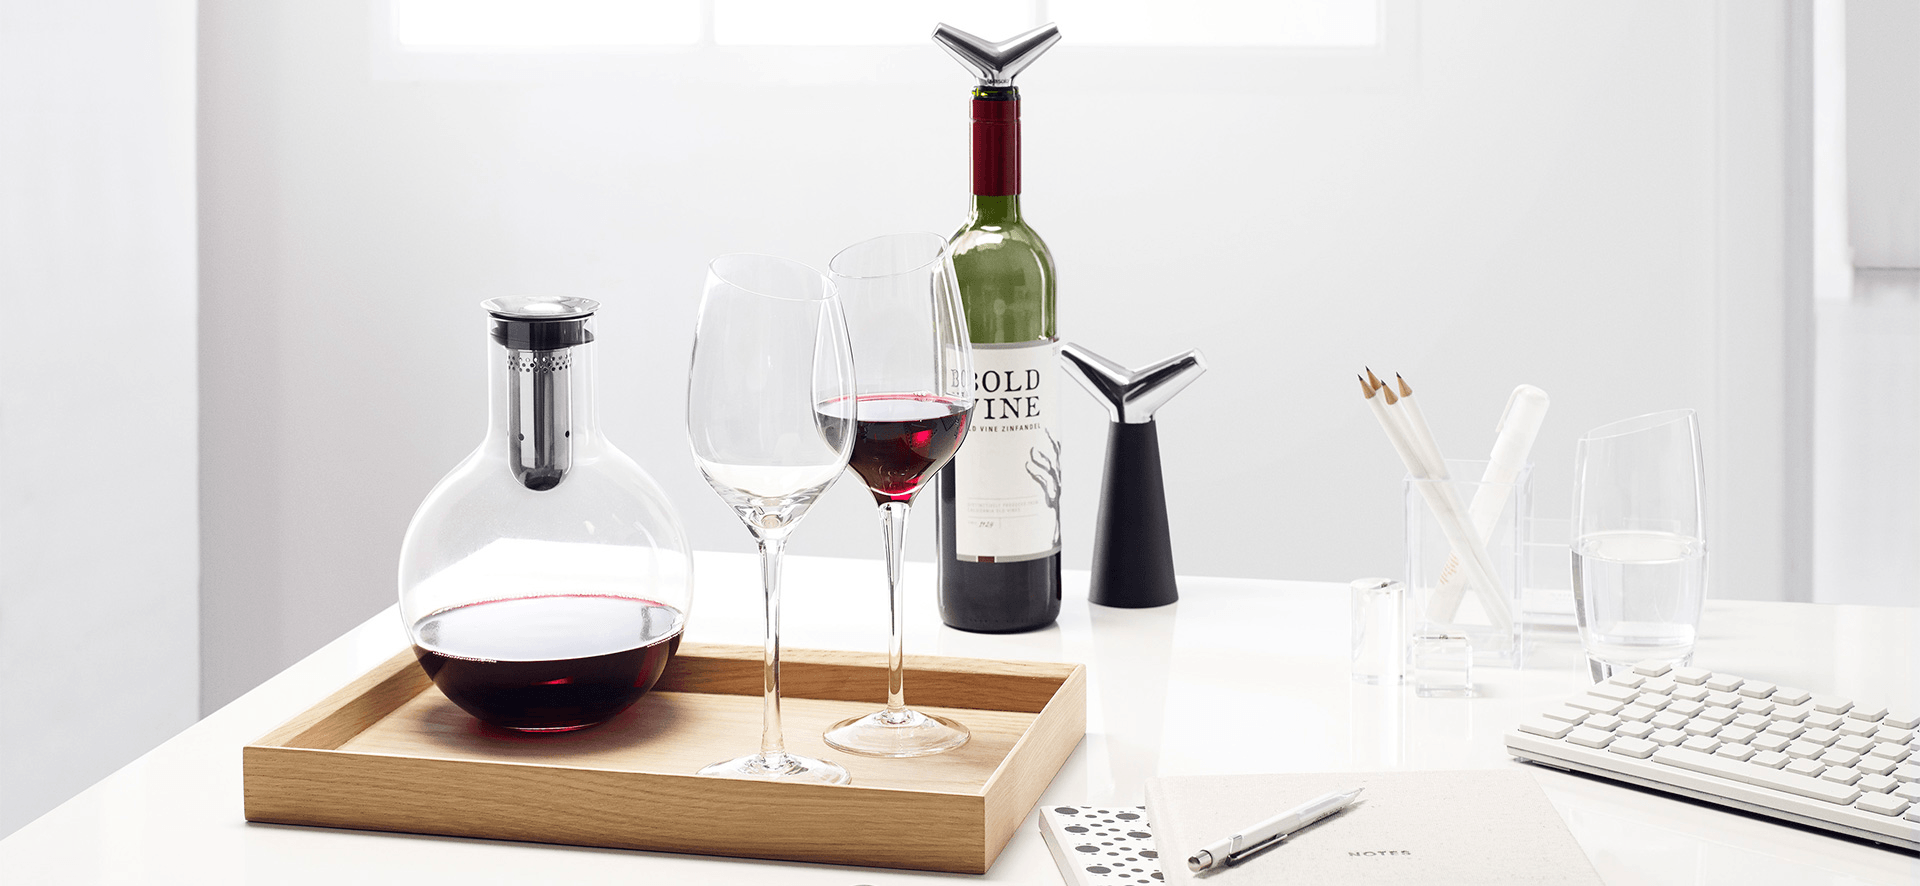 Eva Solo BORDEAUX Weinglas Rotweinglas mundgeblasen 2er Set - HomeDesign Knaus wir schaffen Inspirationen 